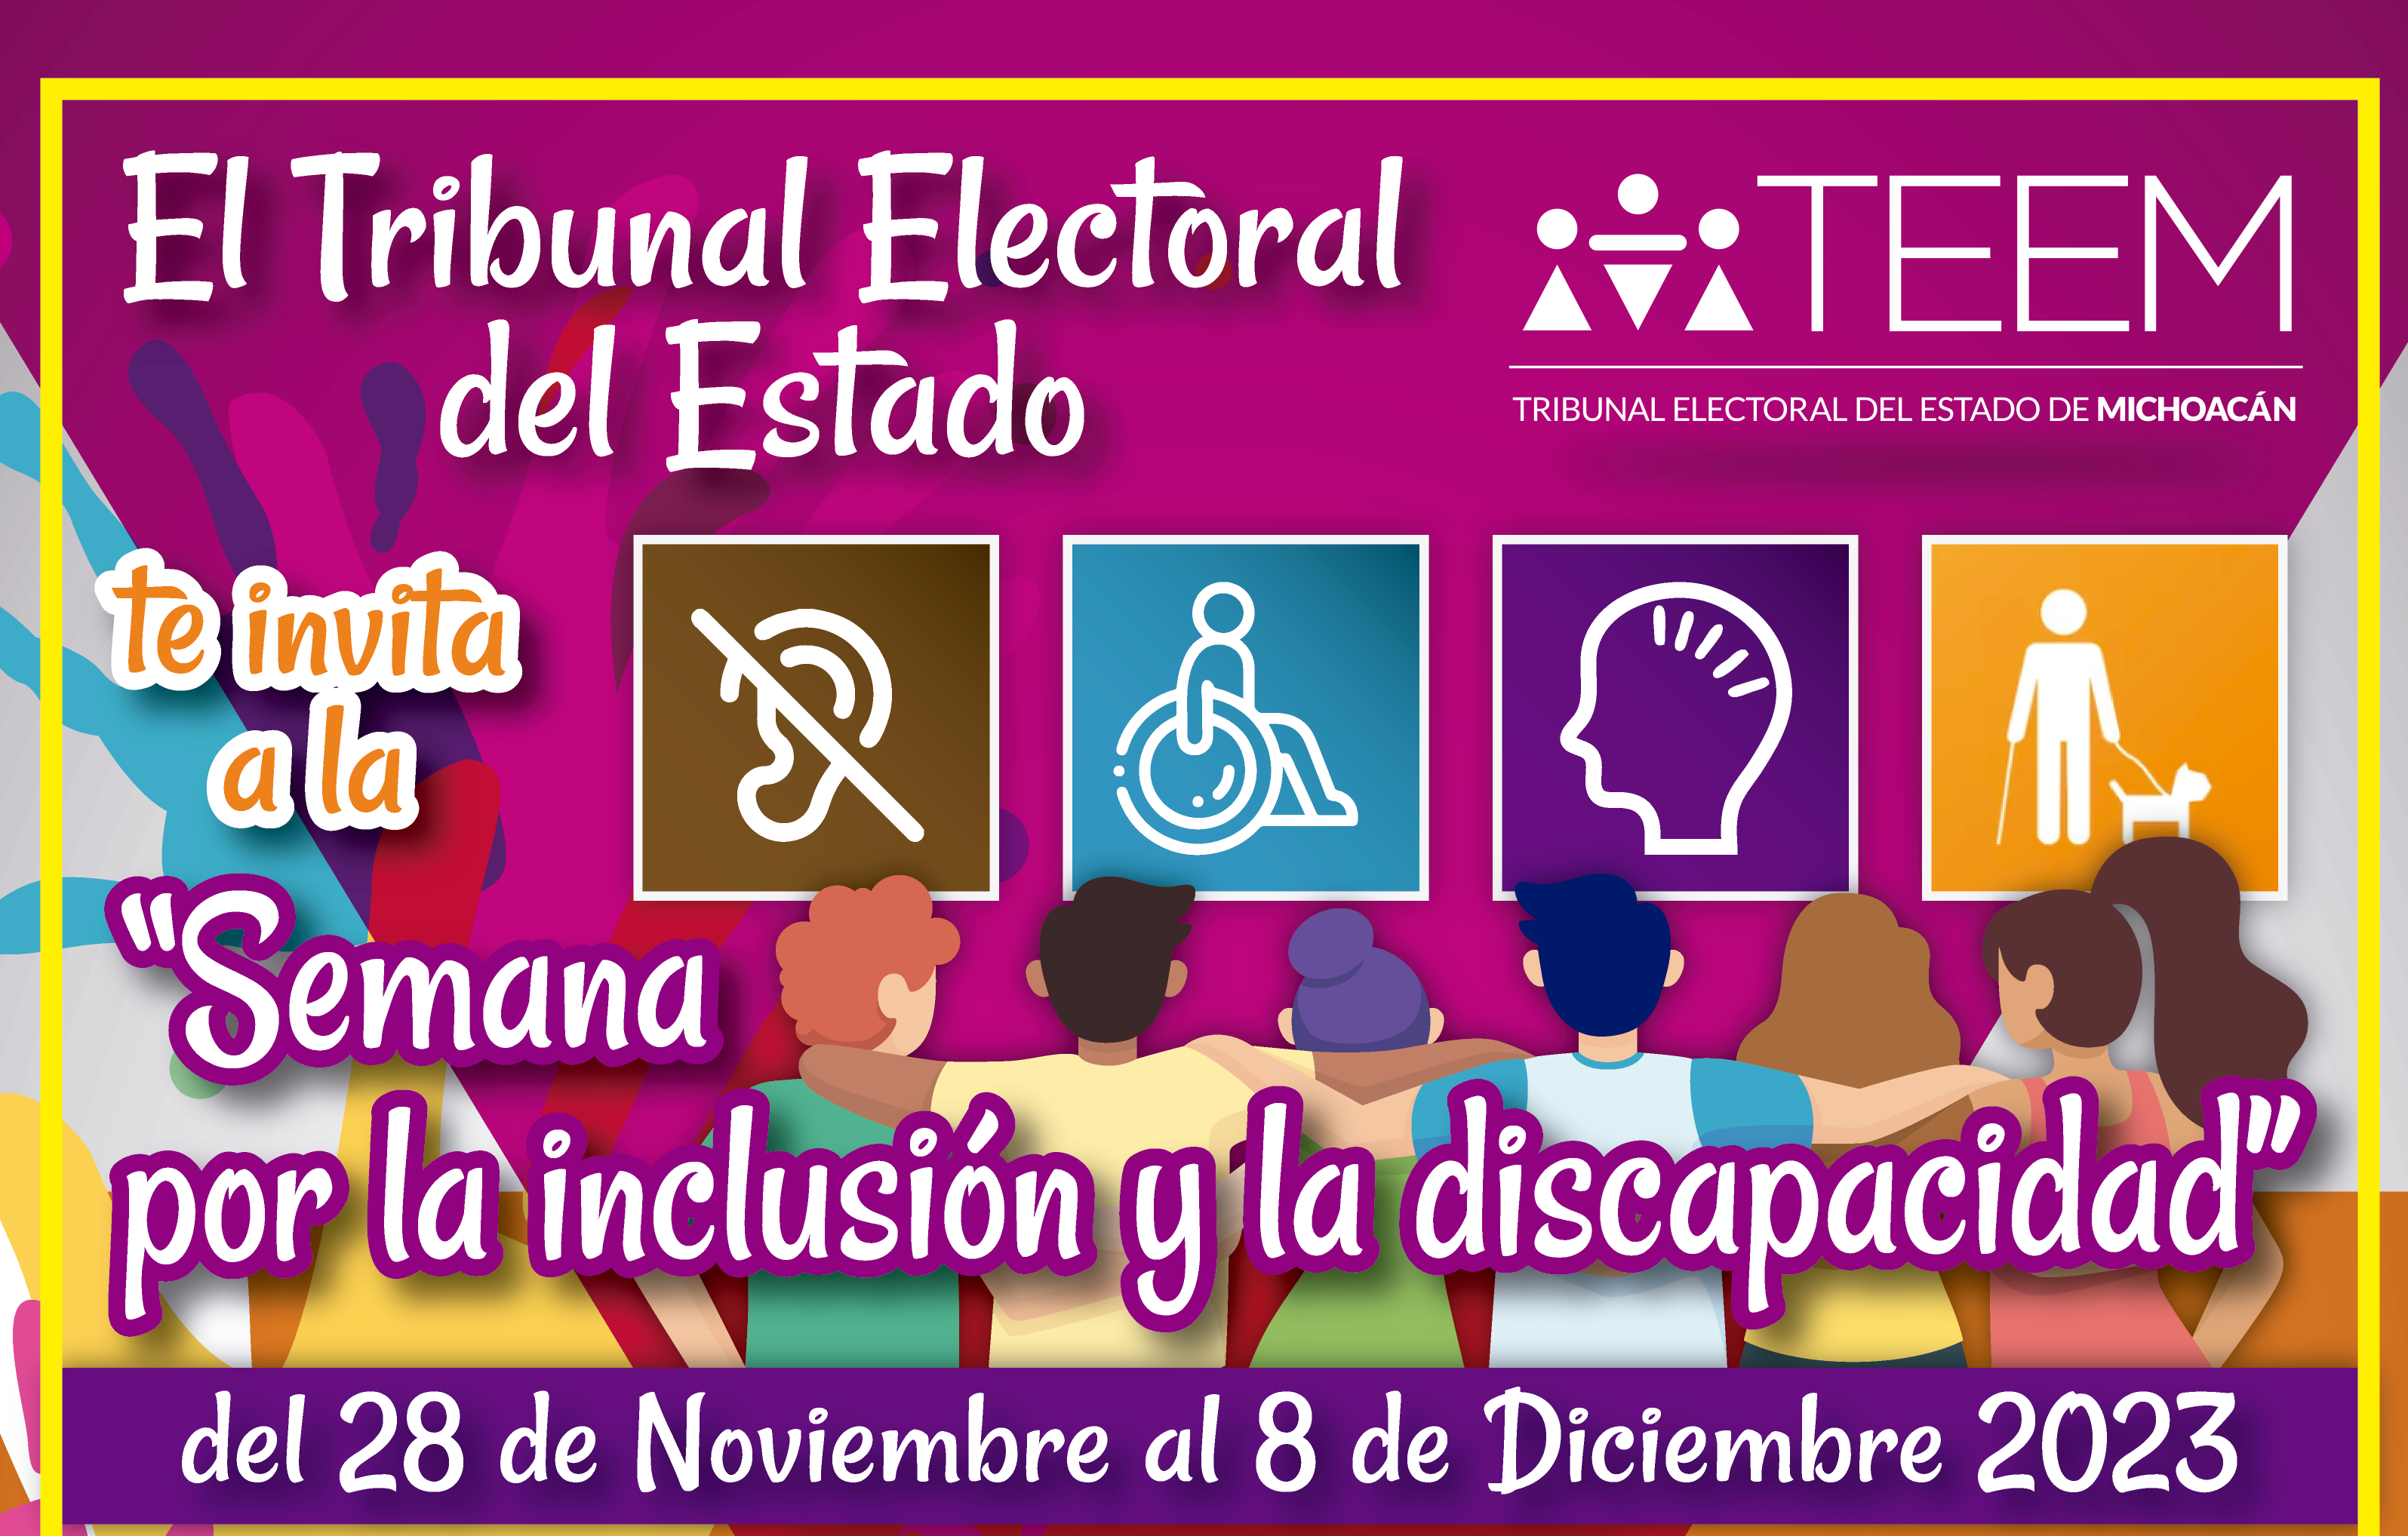 “Semana por la inclusión y la discapacidad” del 28 de Noviembre al 8 de Diciembre de 2023.